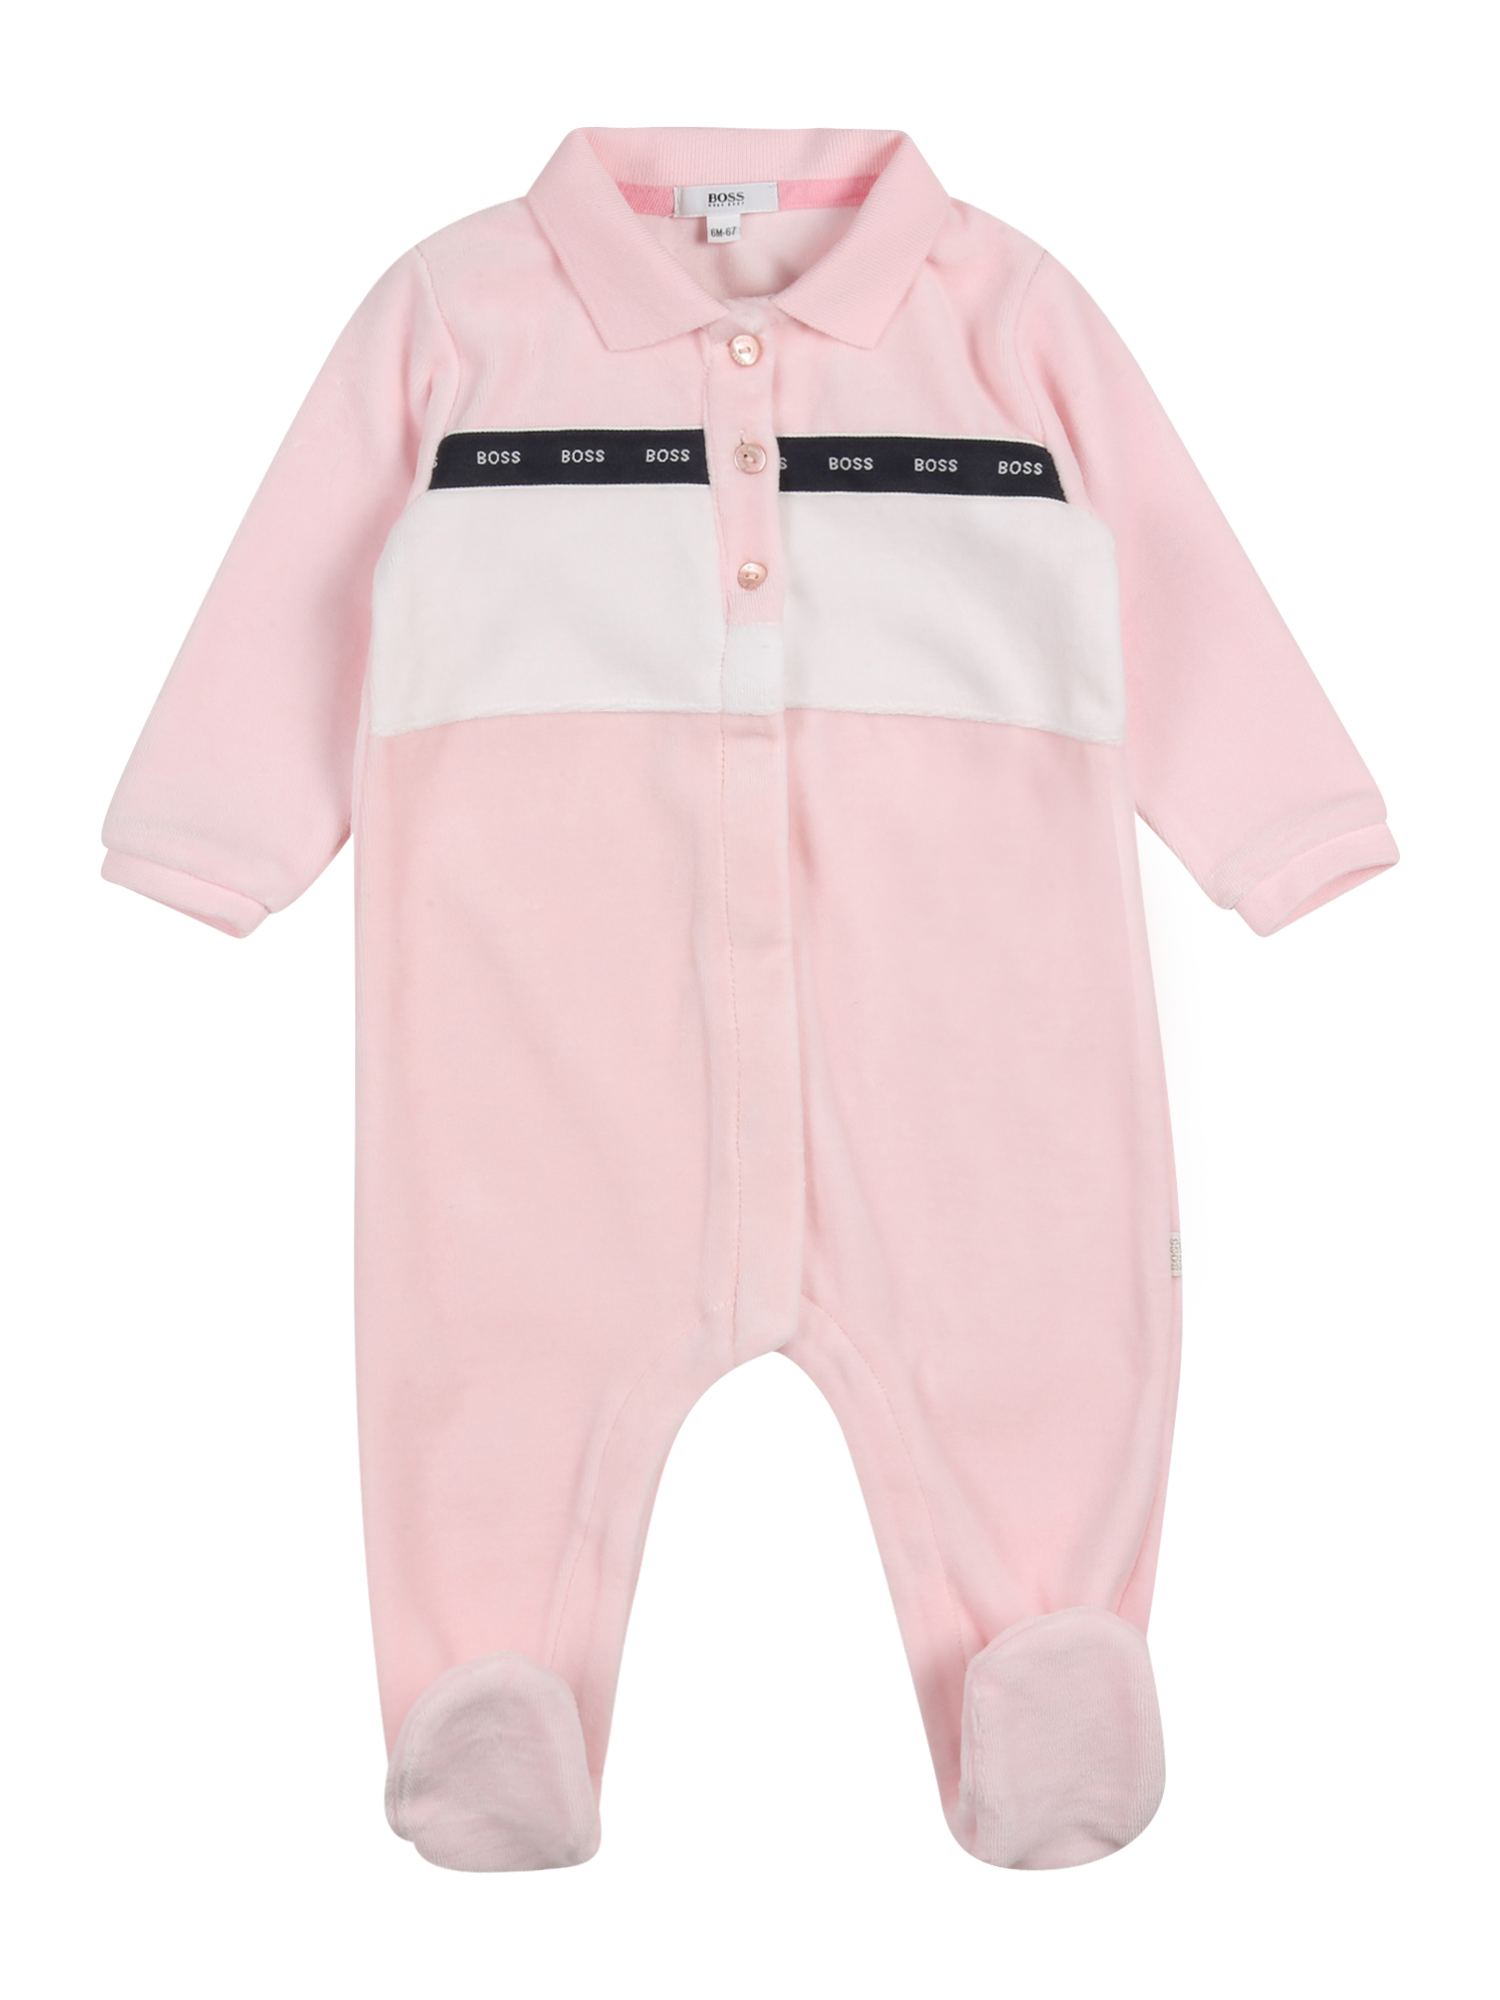 Abbigliamento Bambini BOSS Kidswear Pigiama in Rosa 